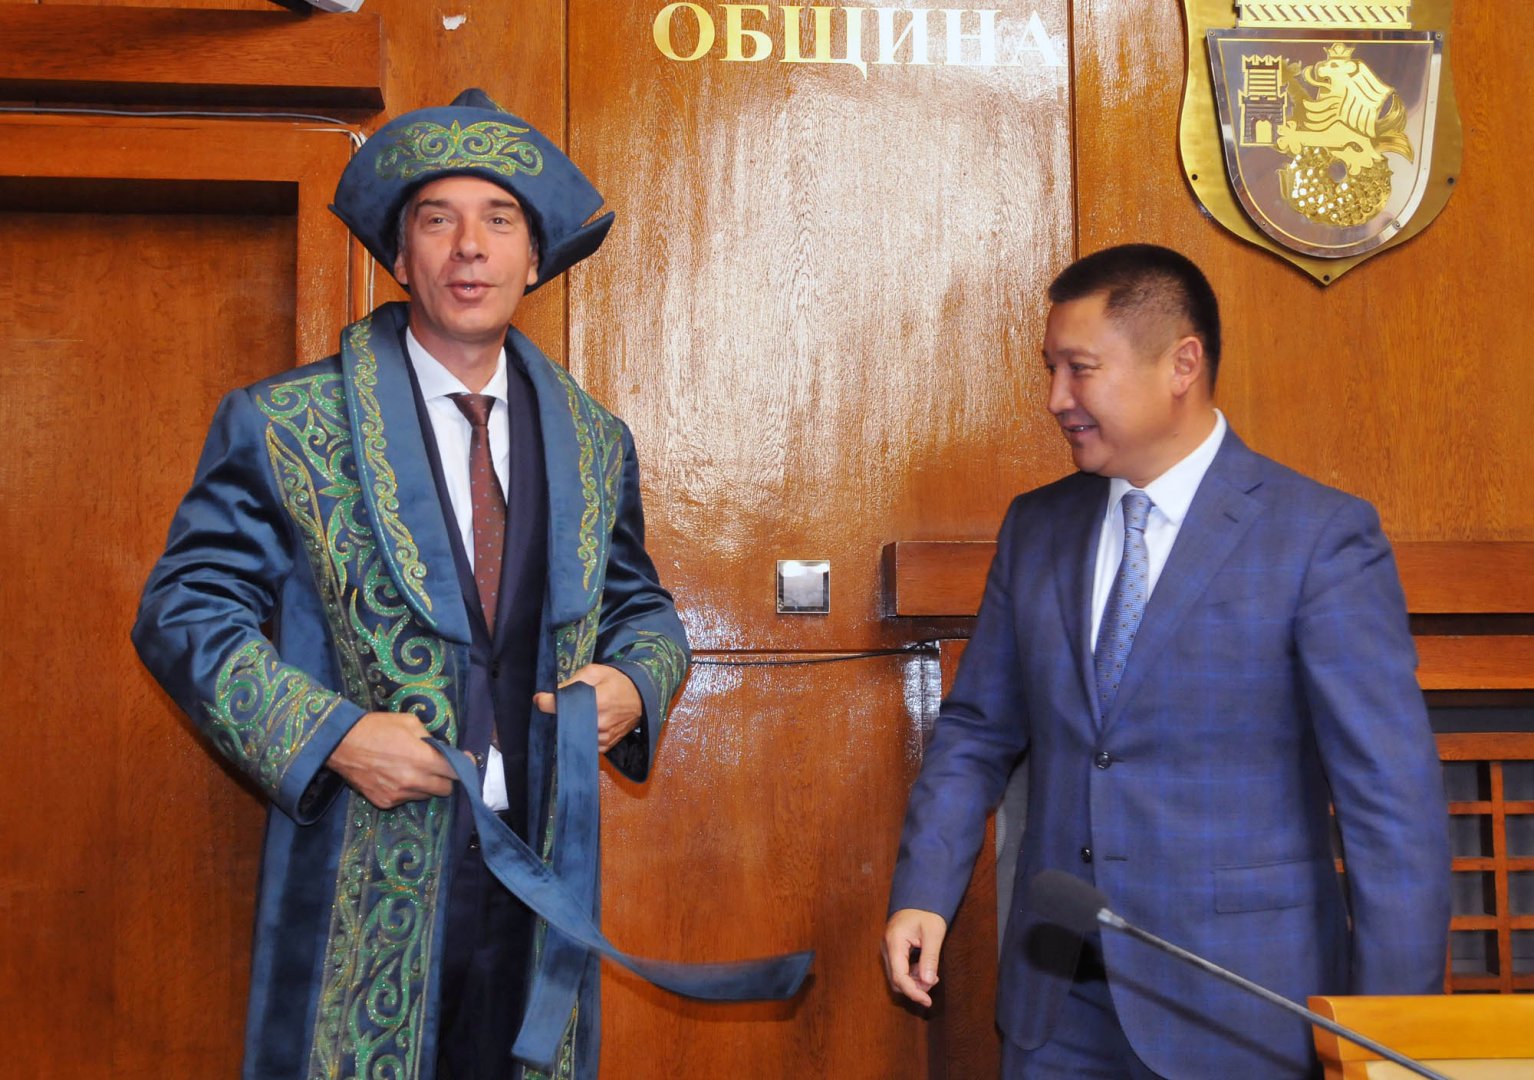 Кметът на Бургас Димитър Николов облече подарената му традиционна казахстанска дреха - шабан. Снимки Черноморие-бг